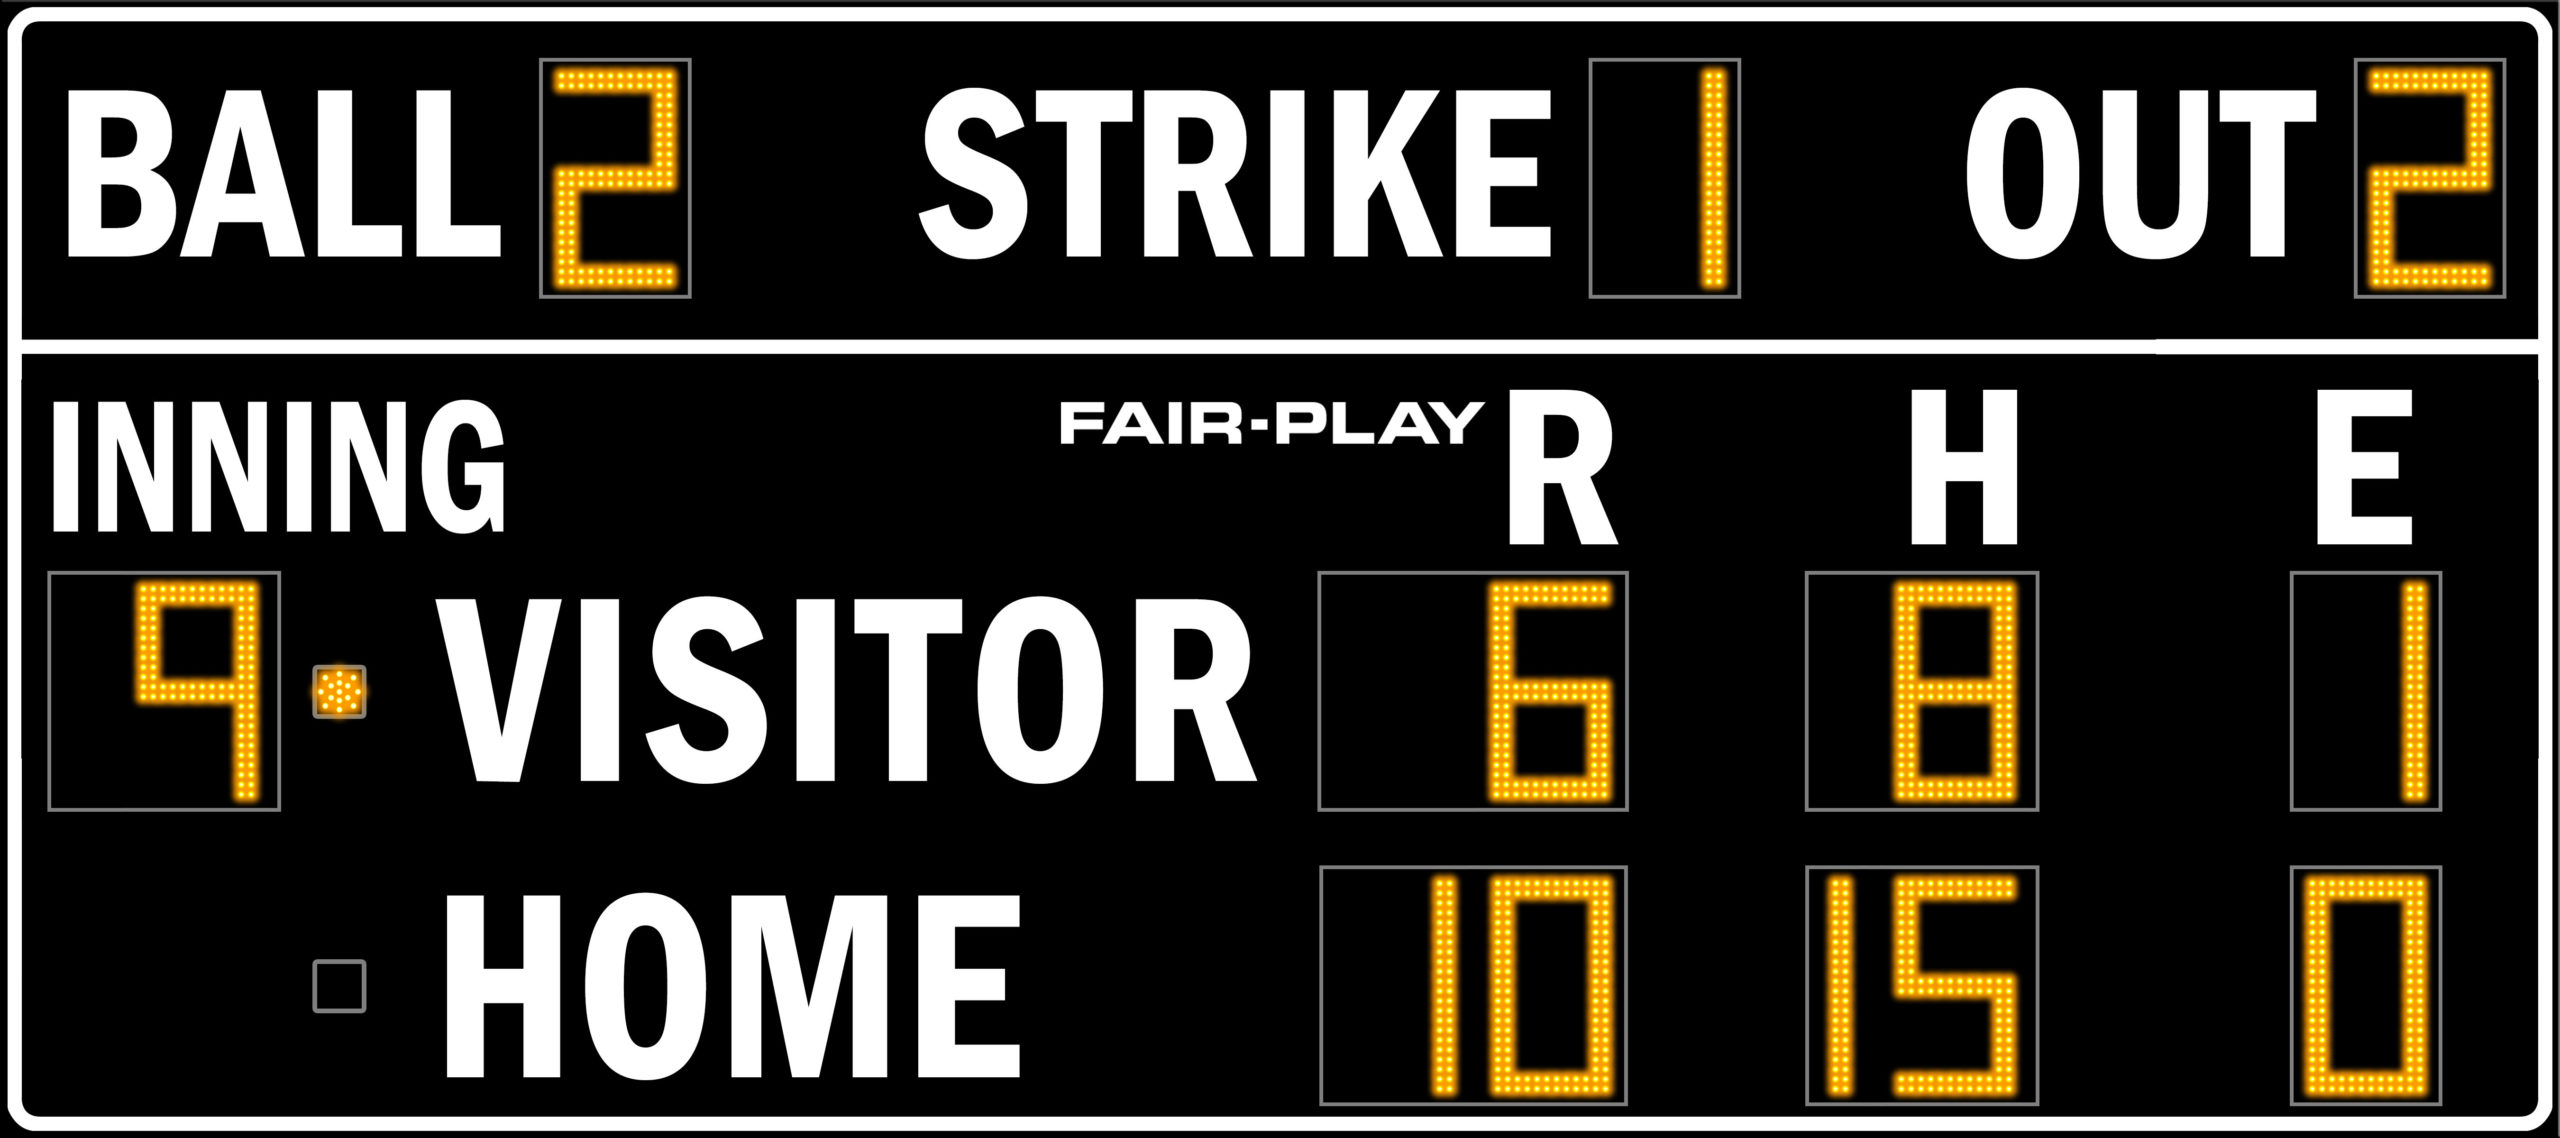 Ba 7118 2 Baseball Scoreboard Fair Play Scoreboards